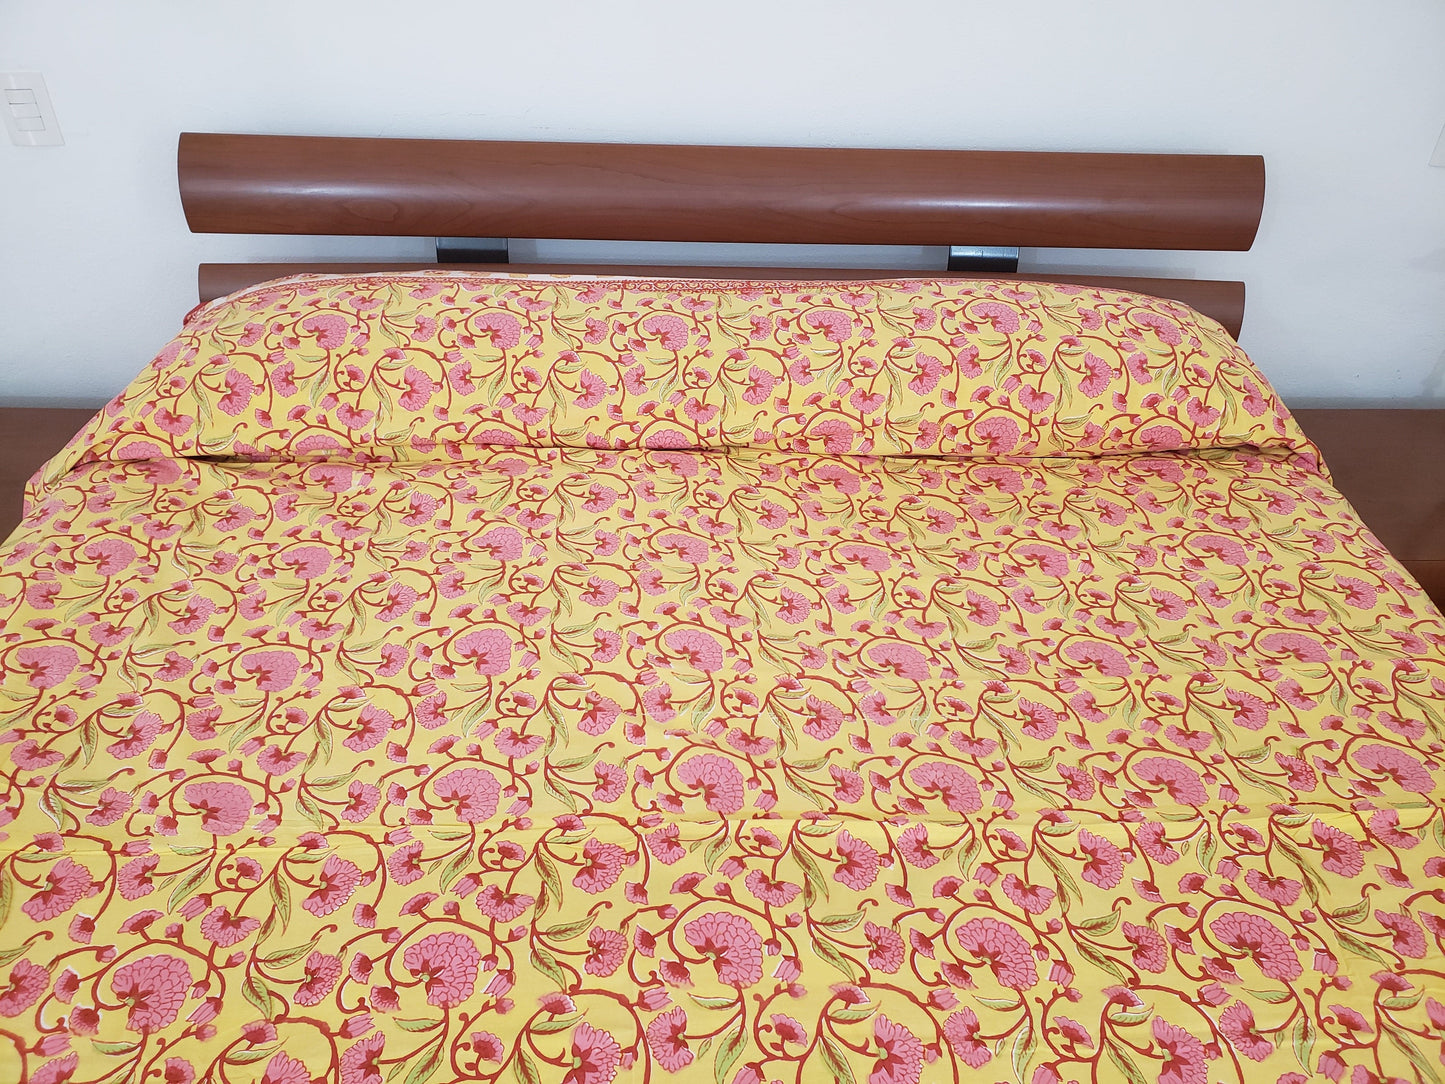 Detalle de sobrecama 100% algodón estampado a mano, base color amarilla con flores rosas y tallos rojos. Hecho en la India.